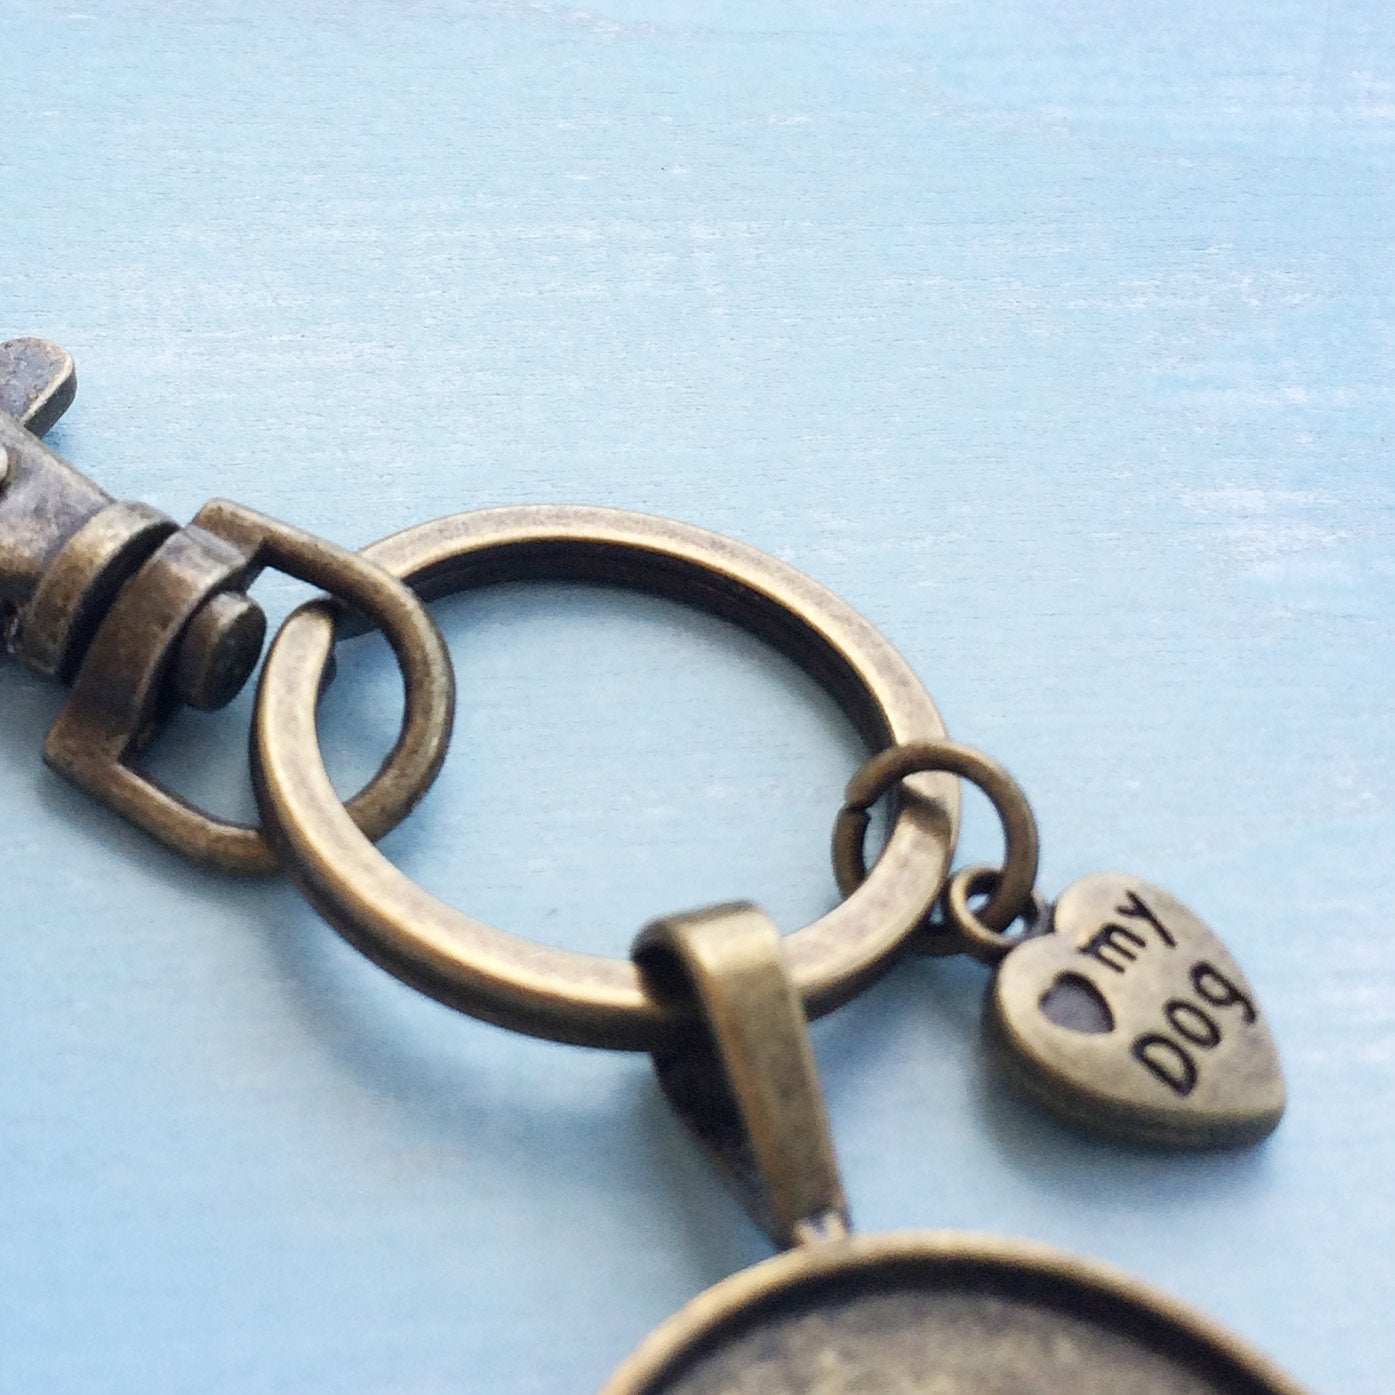 Dein Hund - Personalisierter Schlüsselanhänger antikgold